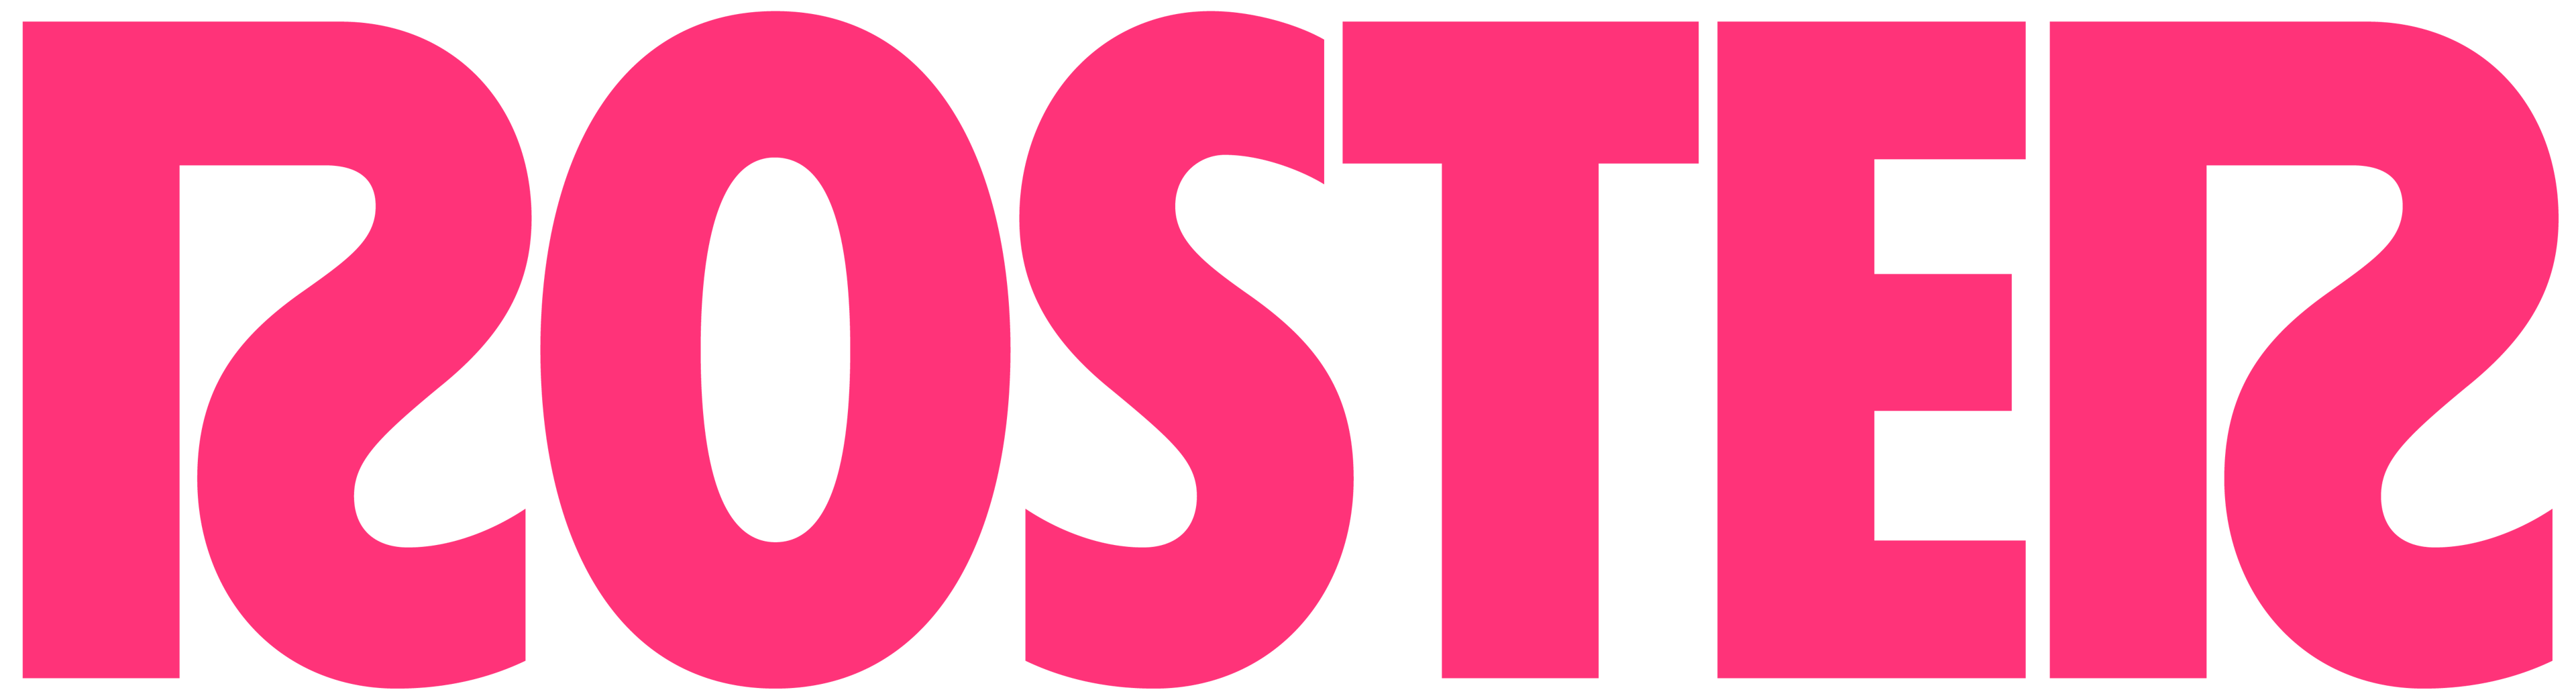 Roster Logo